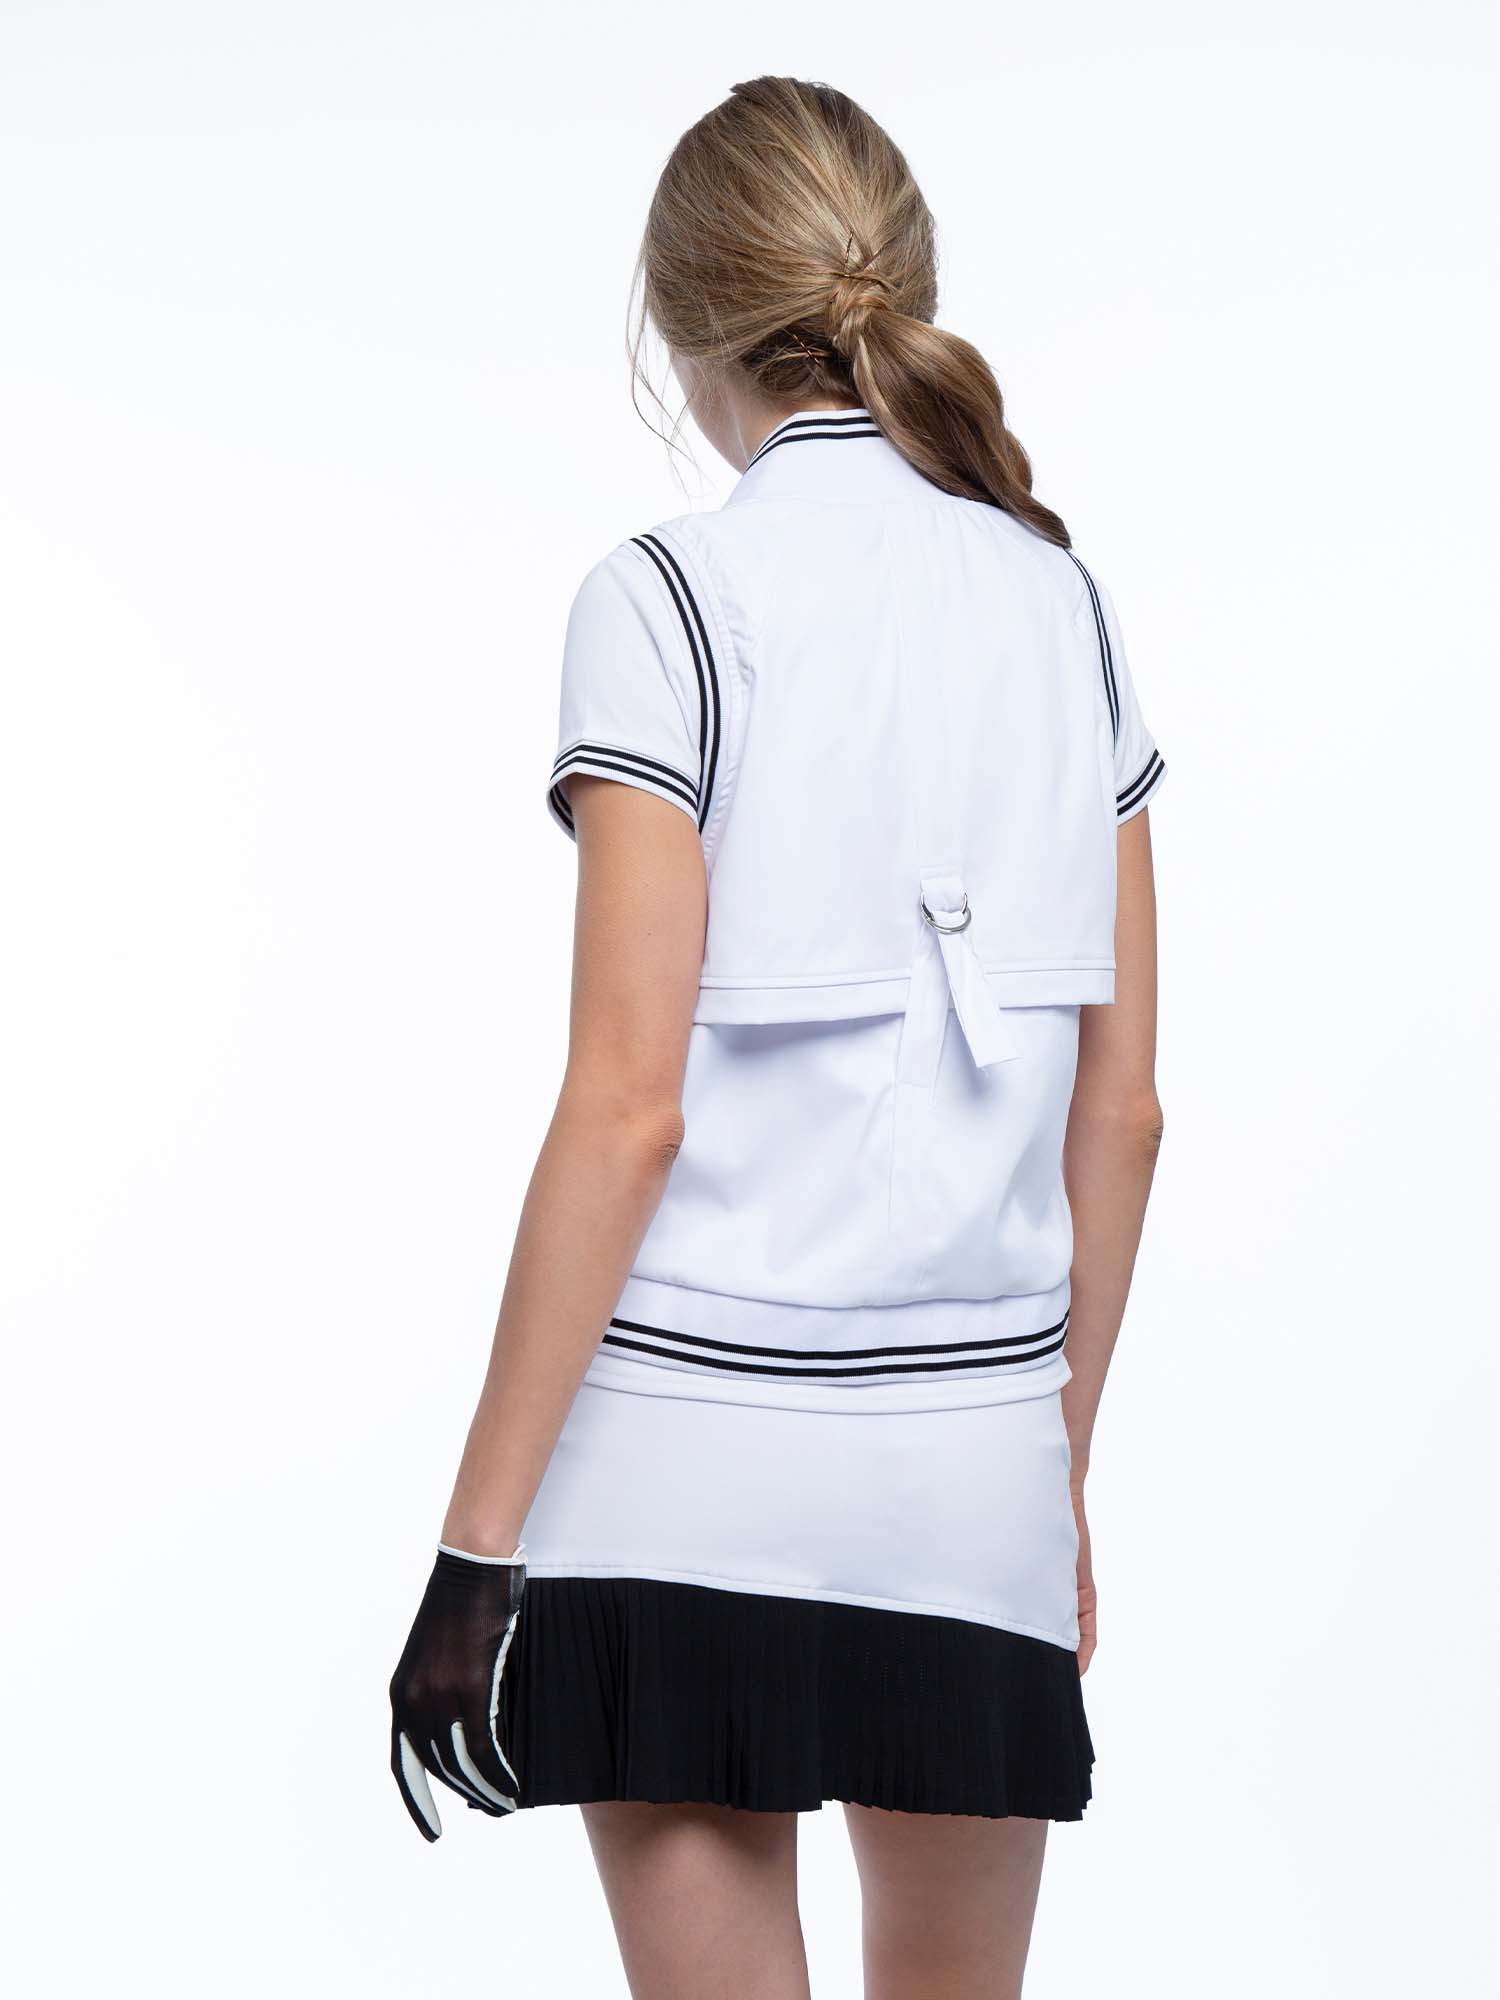 tennis-aubrey-vest-white-black-back